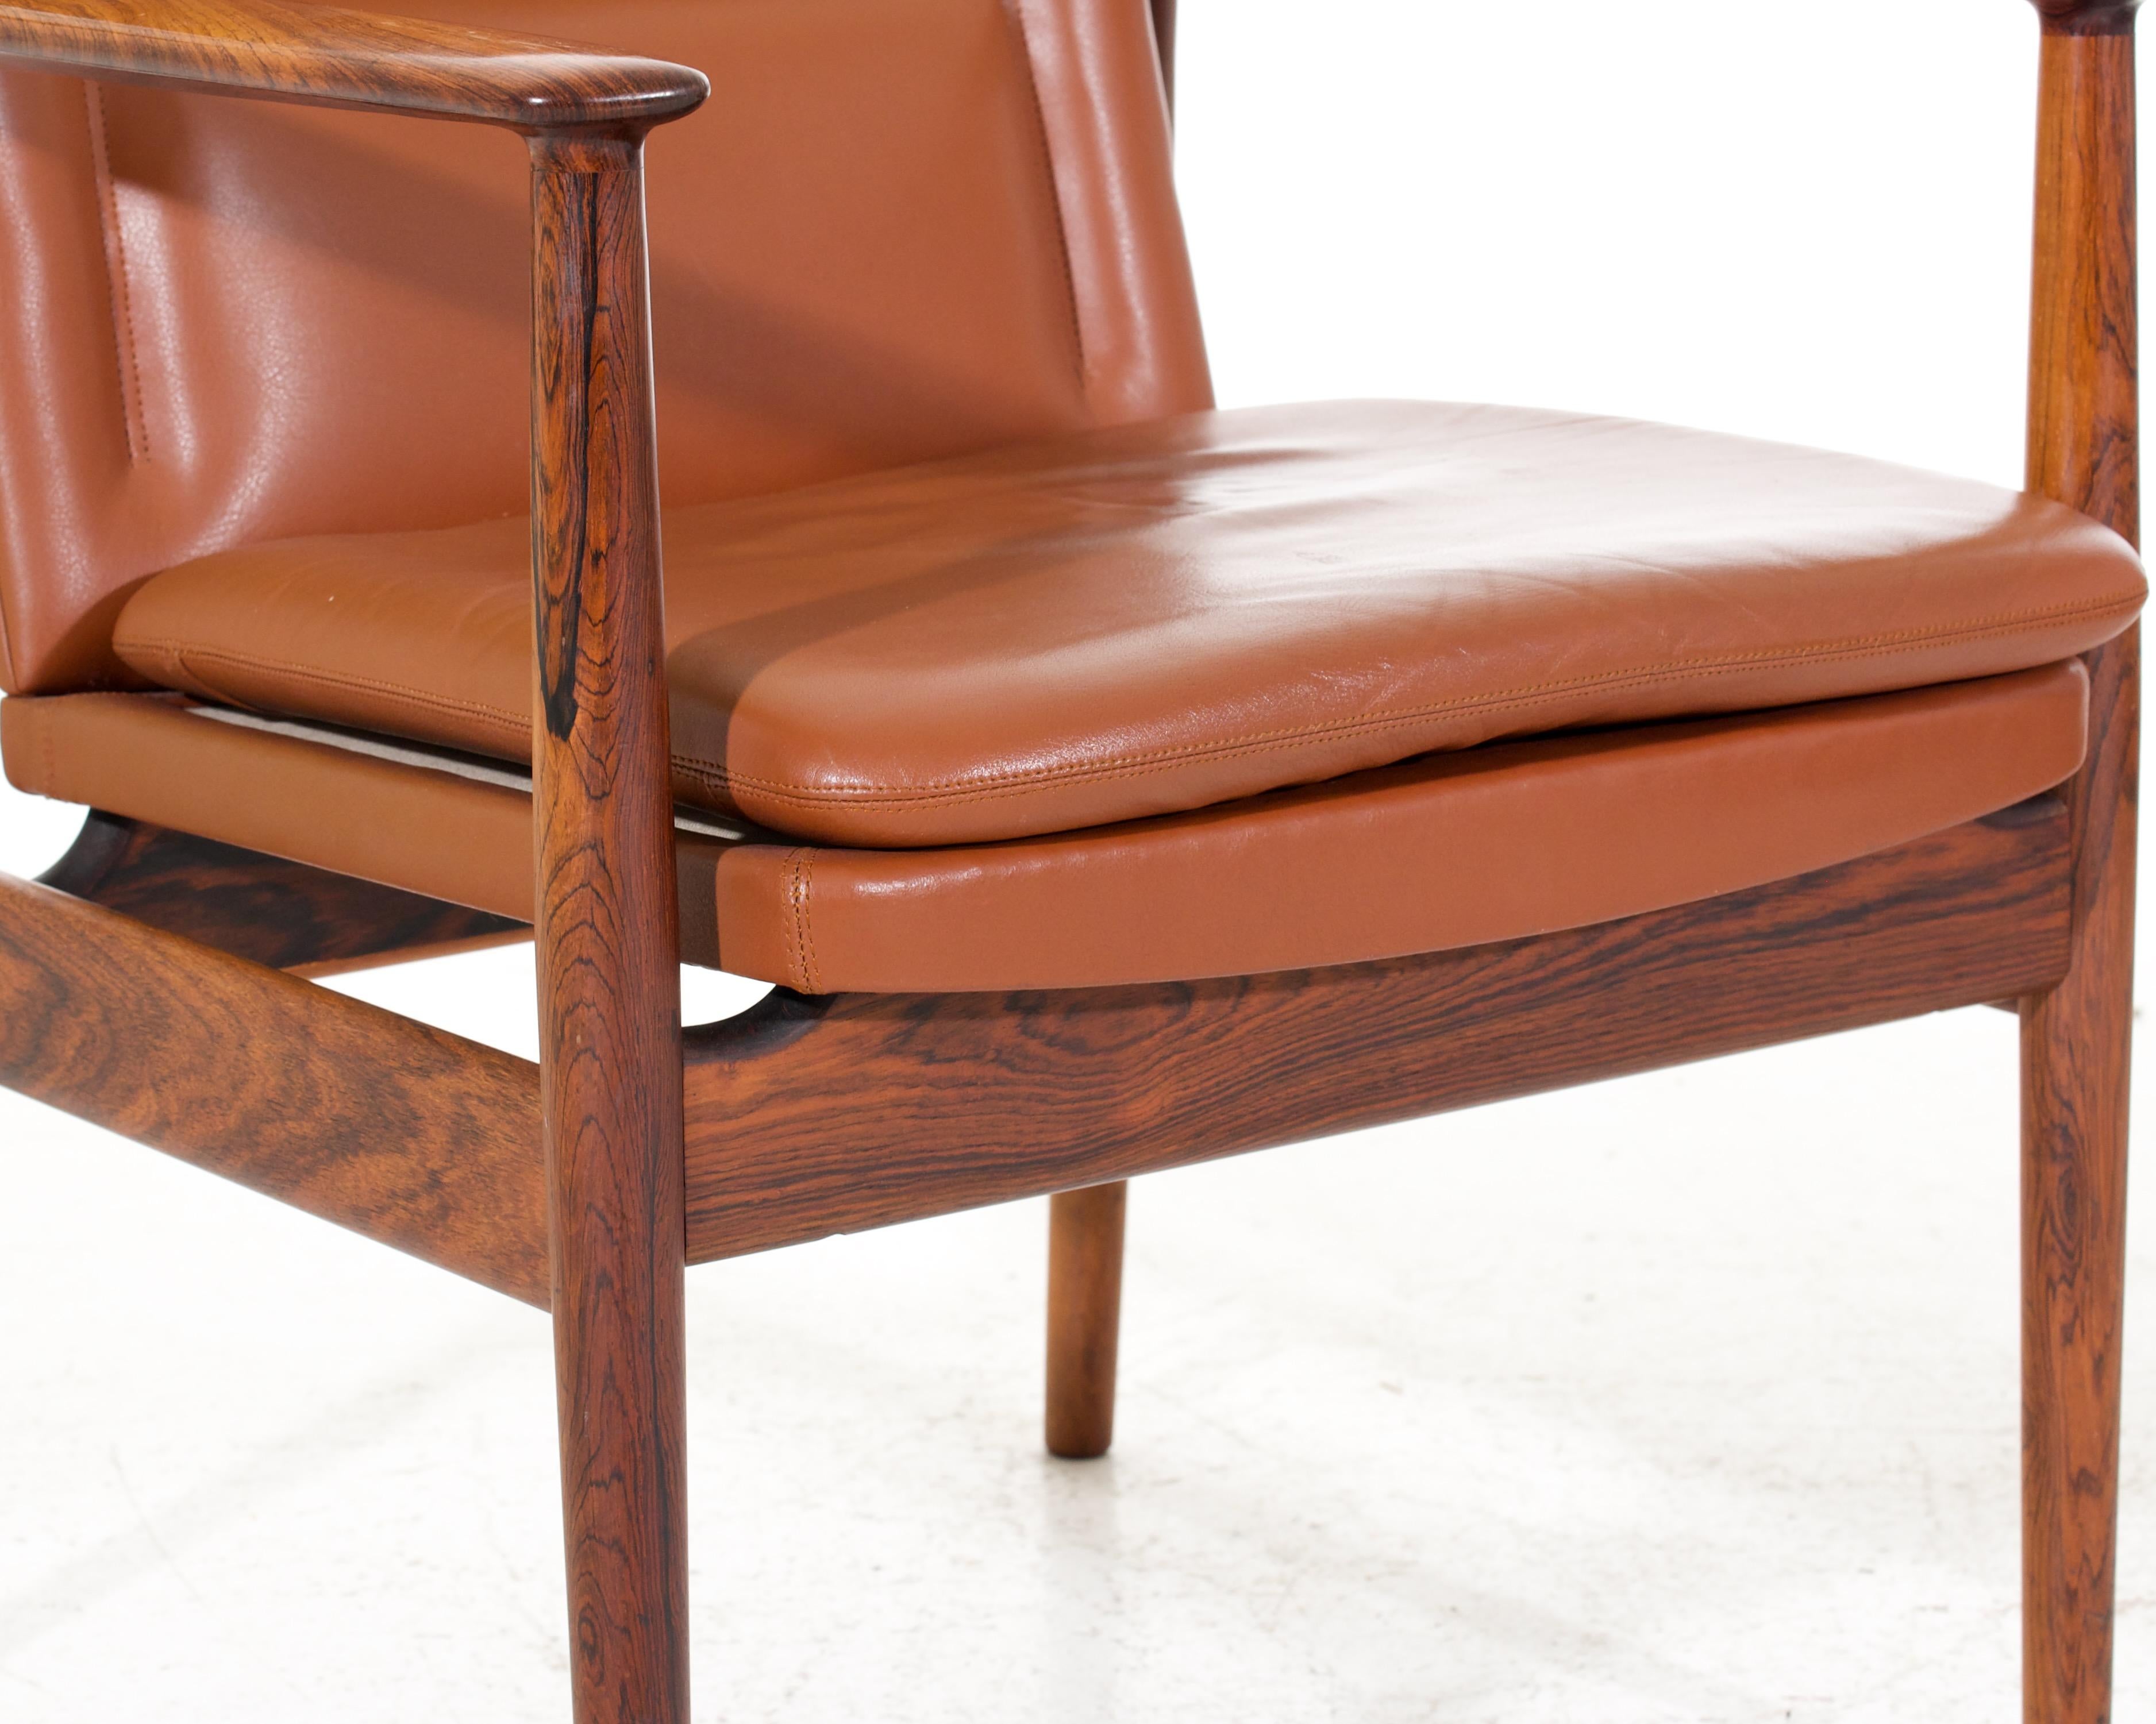 Pair of Danish armchairs in Jakaranda and leather, Arne Vodder for Sibast, Denmark, 1960´s.